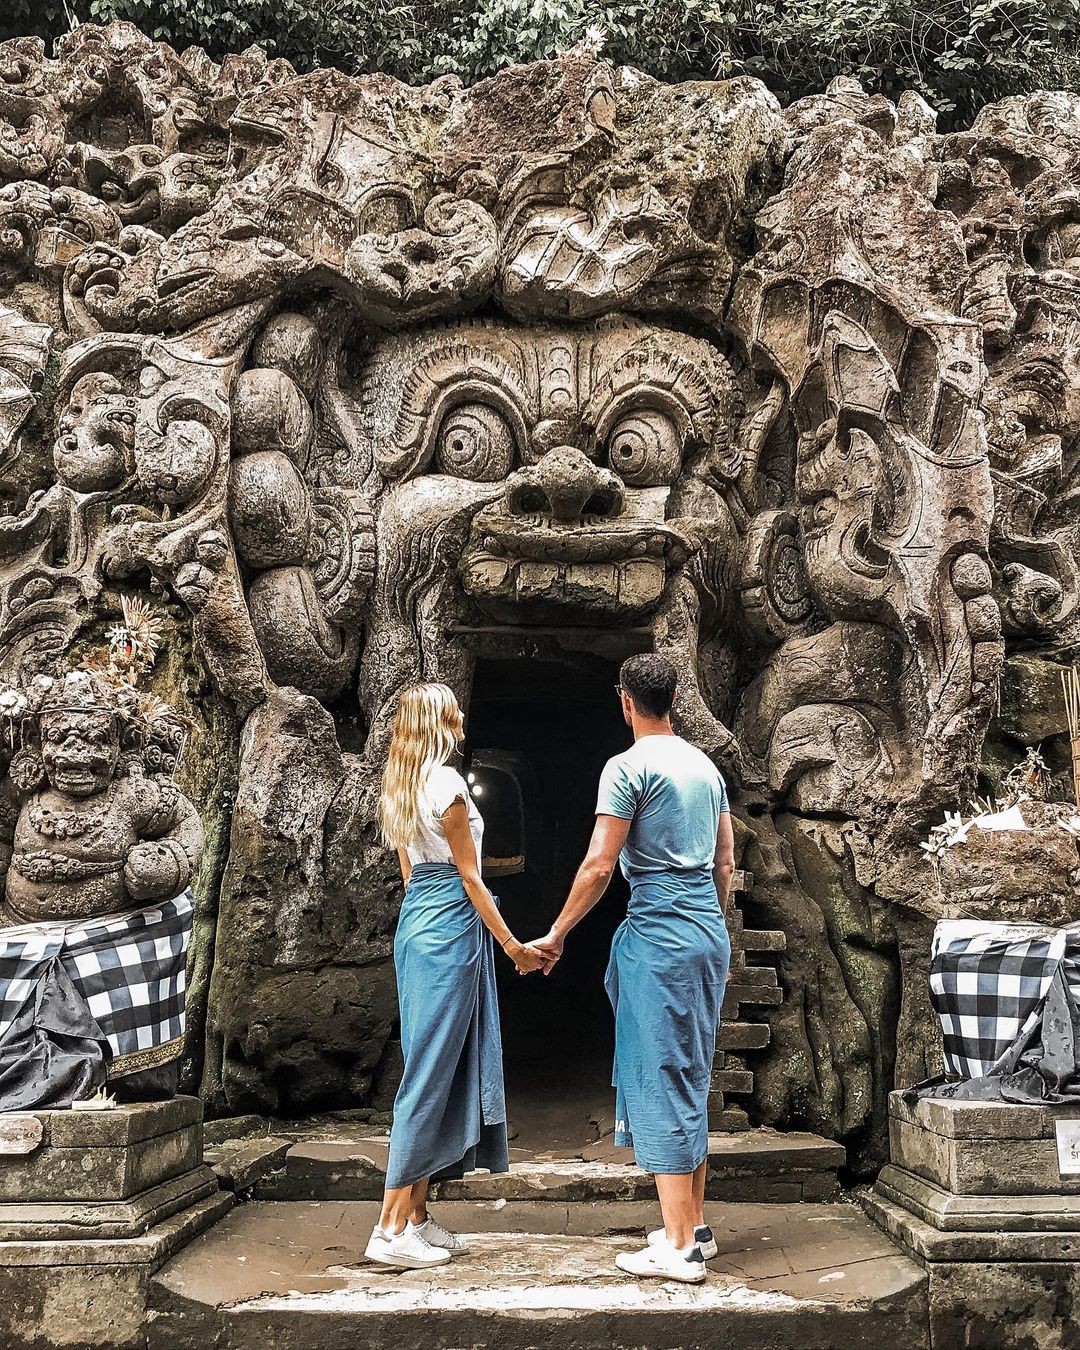 Gua Gajah adalah gua buatan dari masa purbakala yang berfungsi sebagai tempat ibadah. Gua ini terletak di Desa Bedulu, Kecamatan Blahbatuh, Kabupaten Gianyar, Bali; berjarak kurang lebih 27 km dari Denpasar.